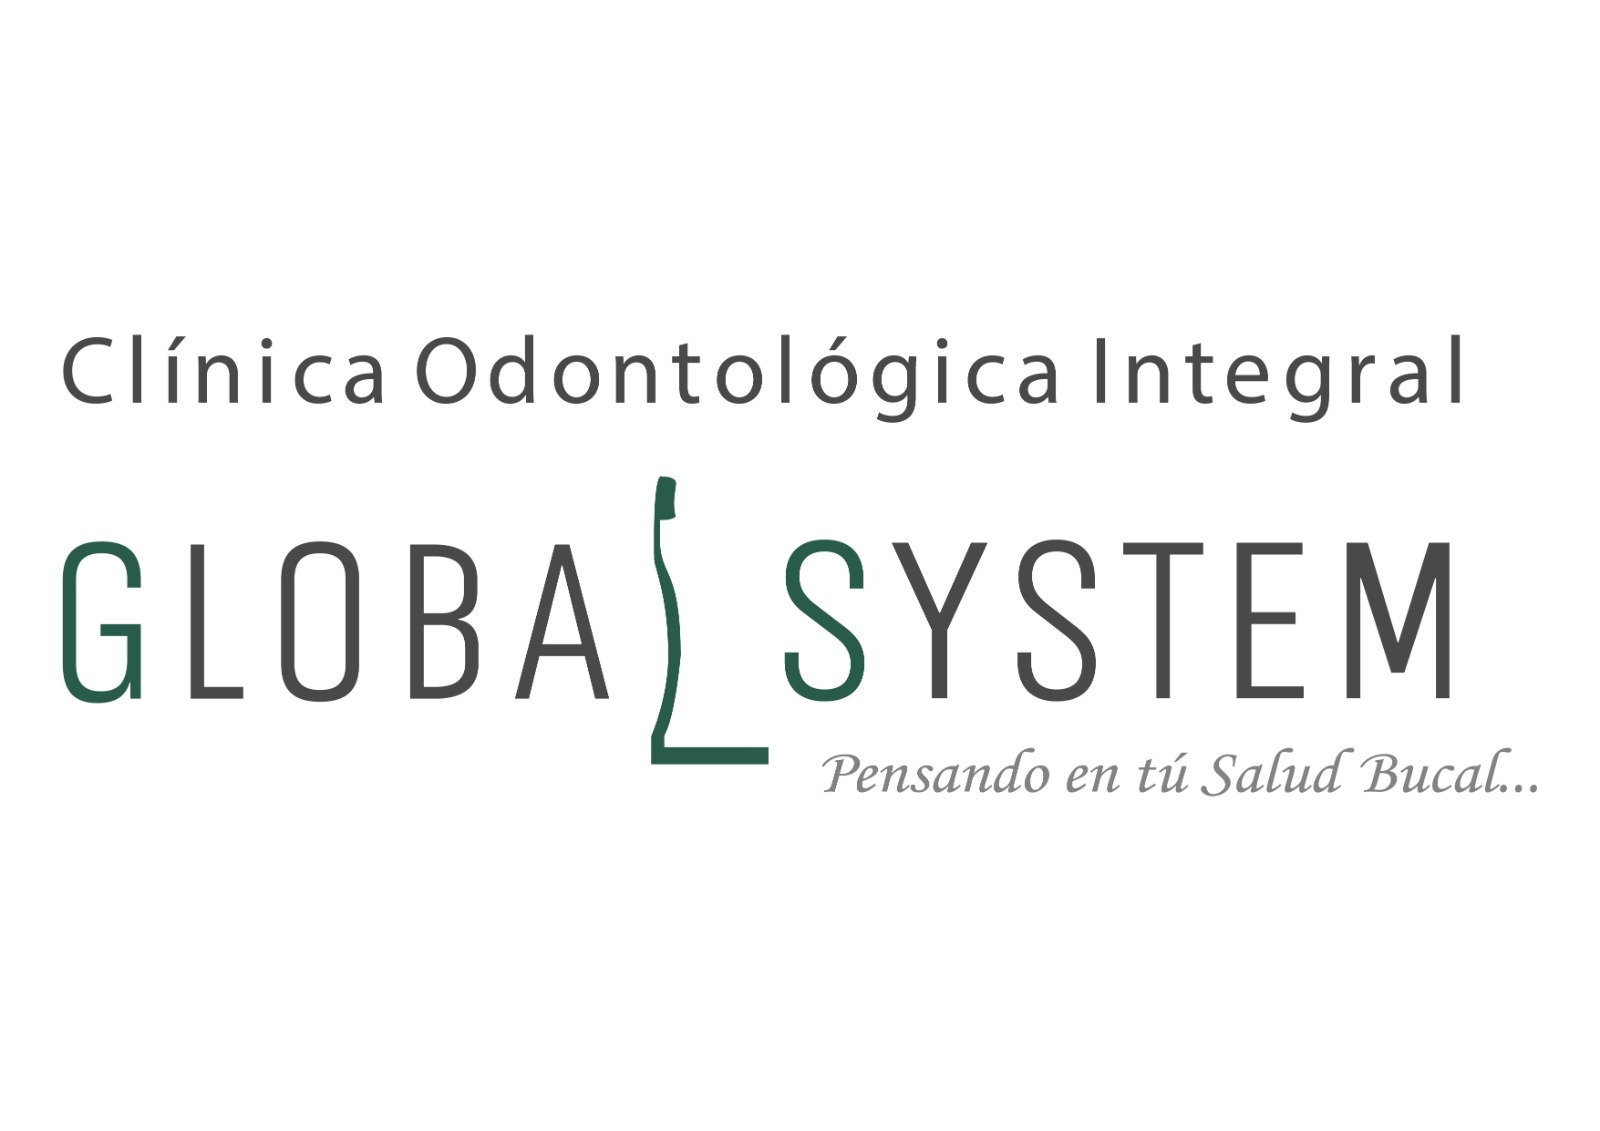 Global System Dental